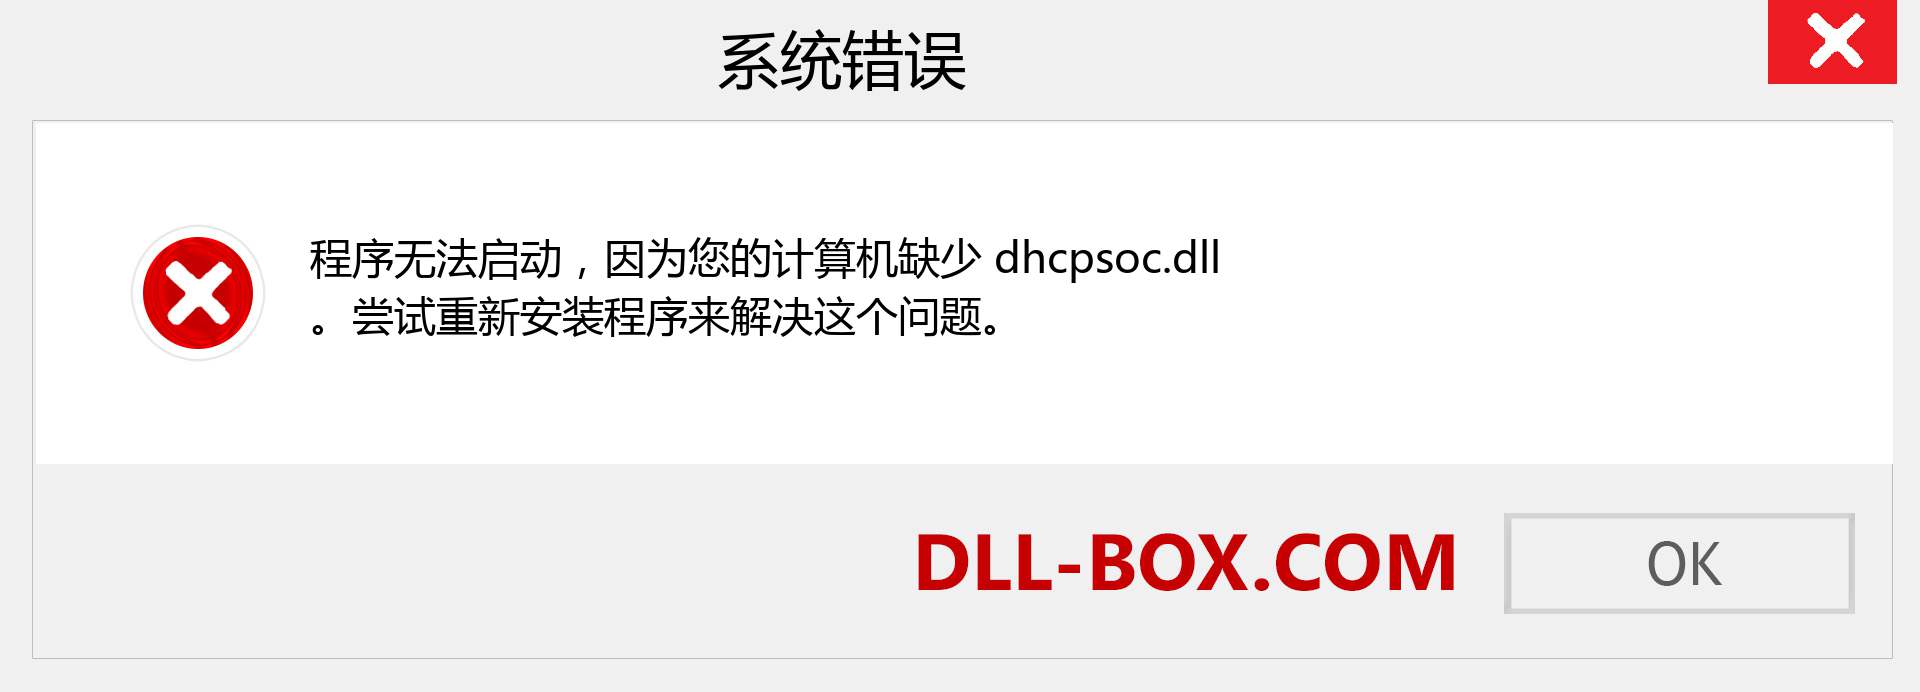 dhcpsoc.dll 文件丢失？。 适用于 Windows 7、8、10 的下载 - 修复 Windows、照片、图像上的 dhcpsoc dll 丢失错误